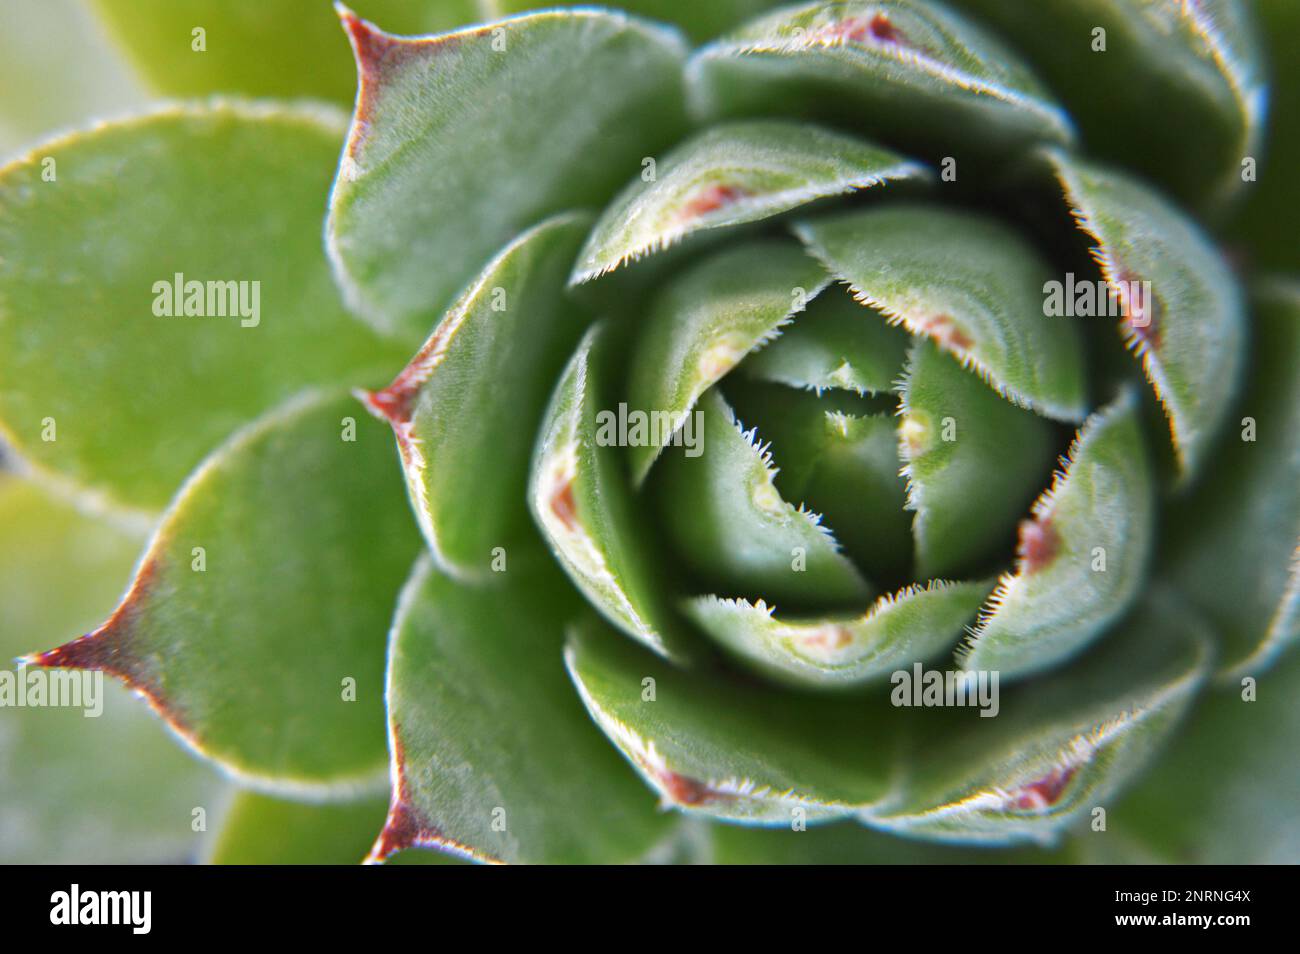 Sempervivum succulent (Houseleek) close up Stock Photo